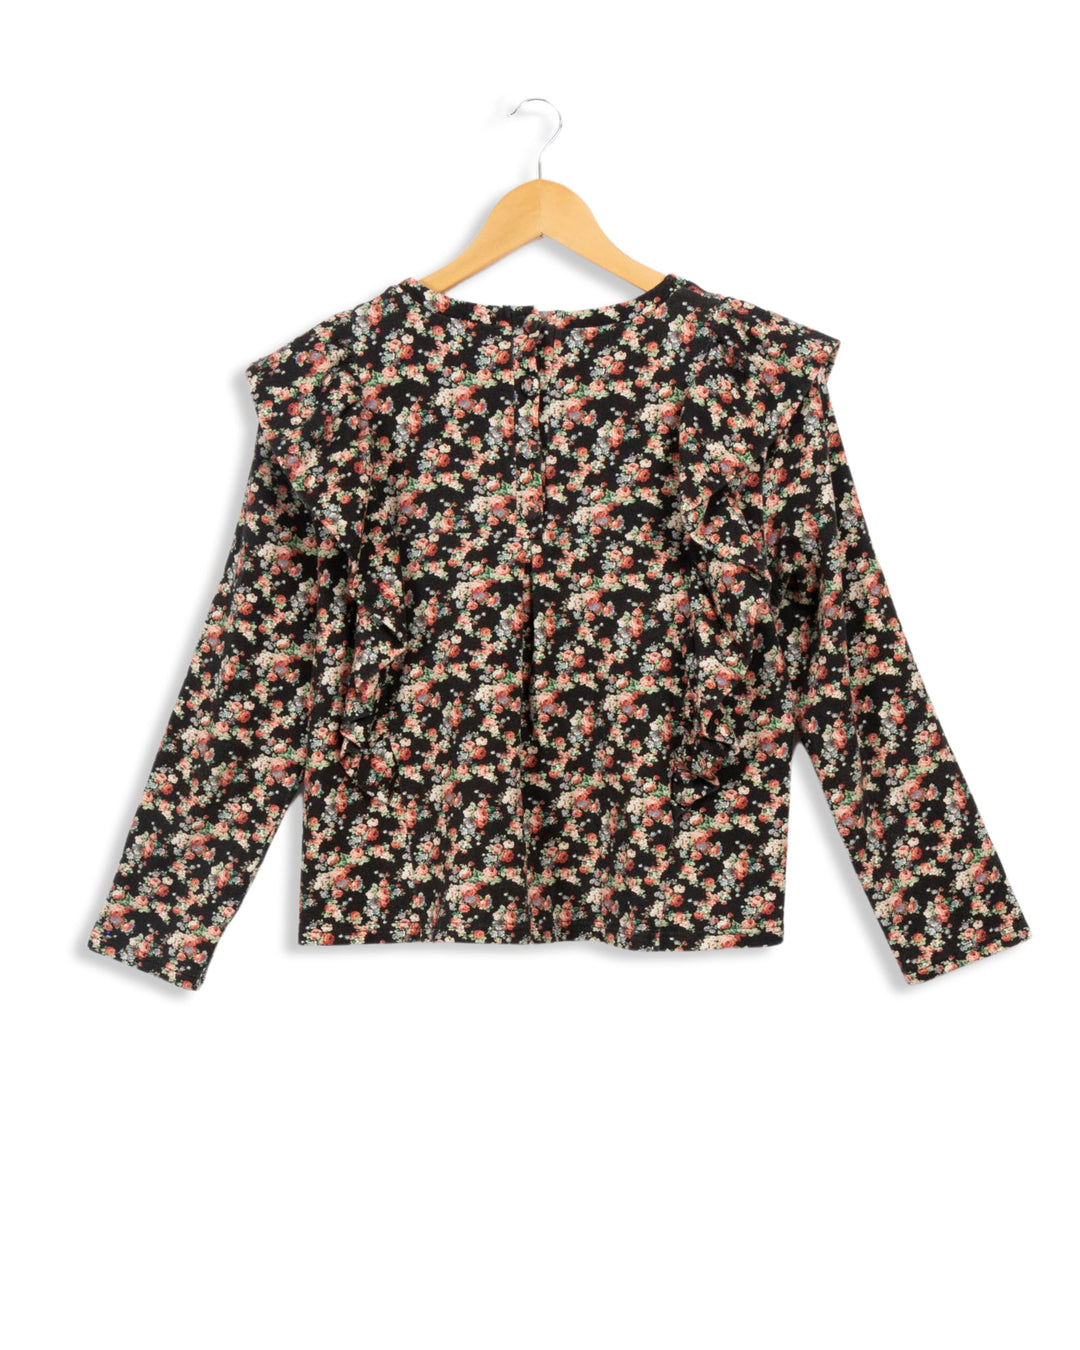 Floral blouse - L